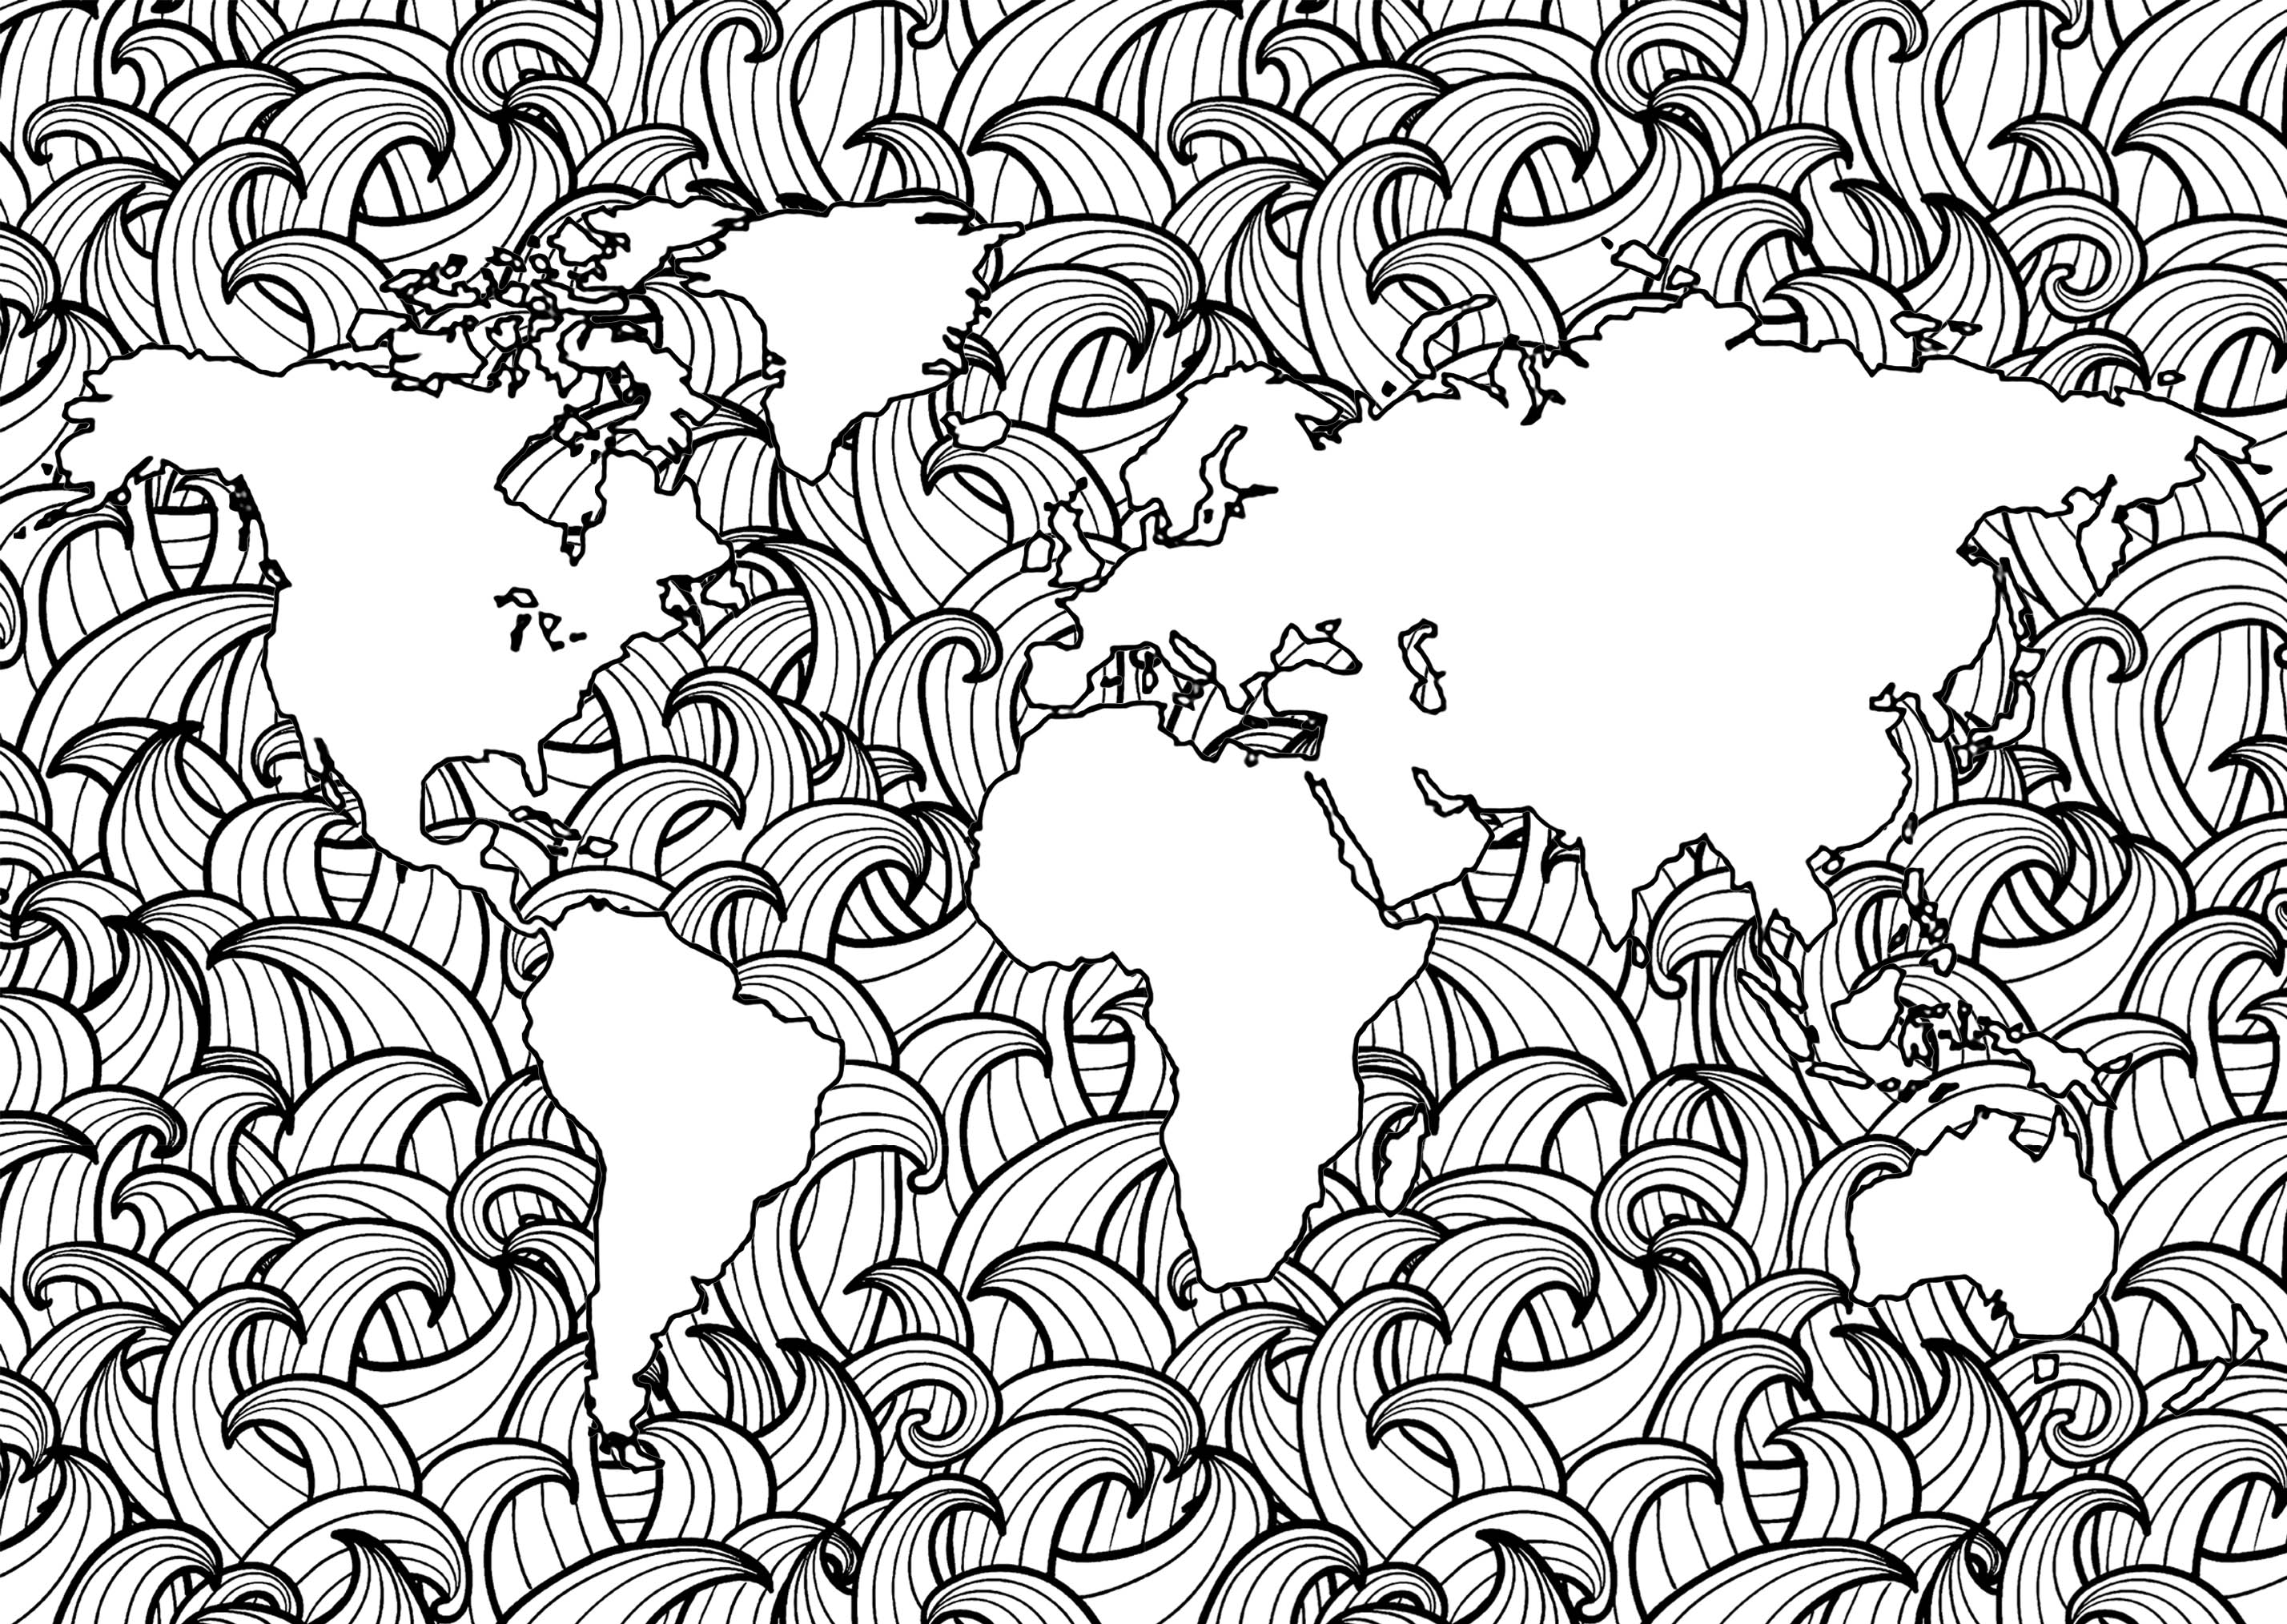 Planisphère avec motifs de vagues complexes dans les mers, Artiste : Art'Isabelle